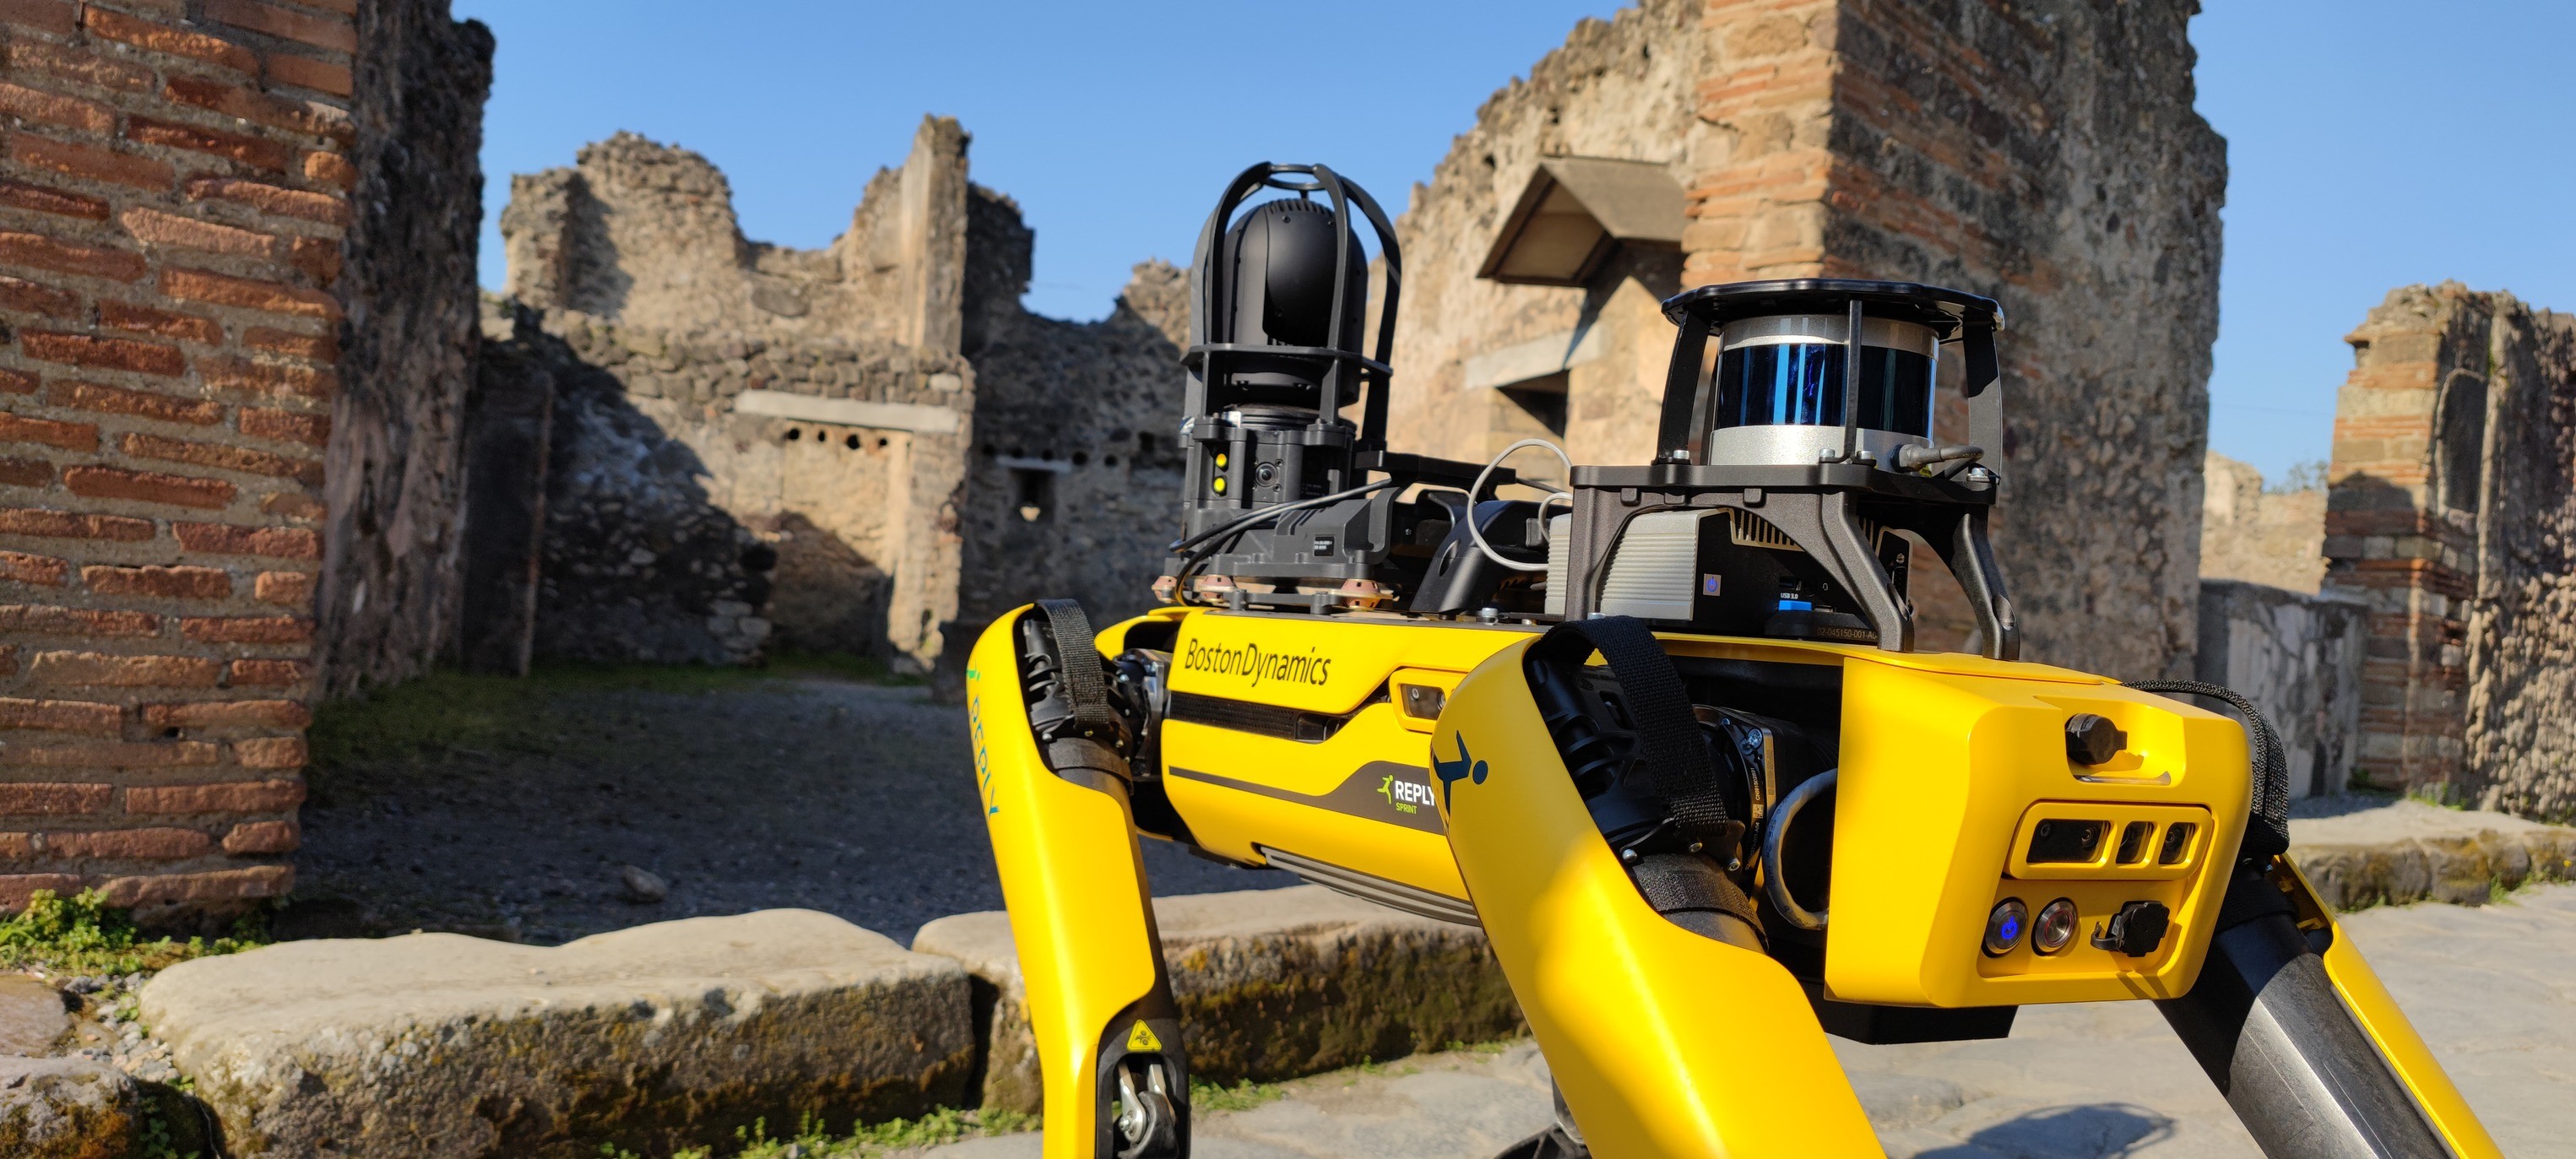 Robô com formato de cachorro desenvolvido pela empresa Boston Dynamics  (Foto: Pompeii - Parco Archeologico/Reprodução/Facebook)